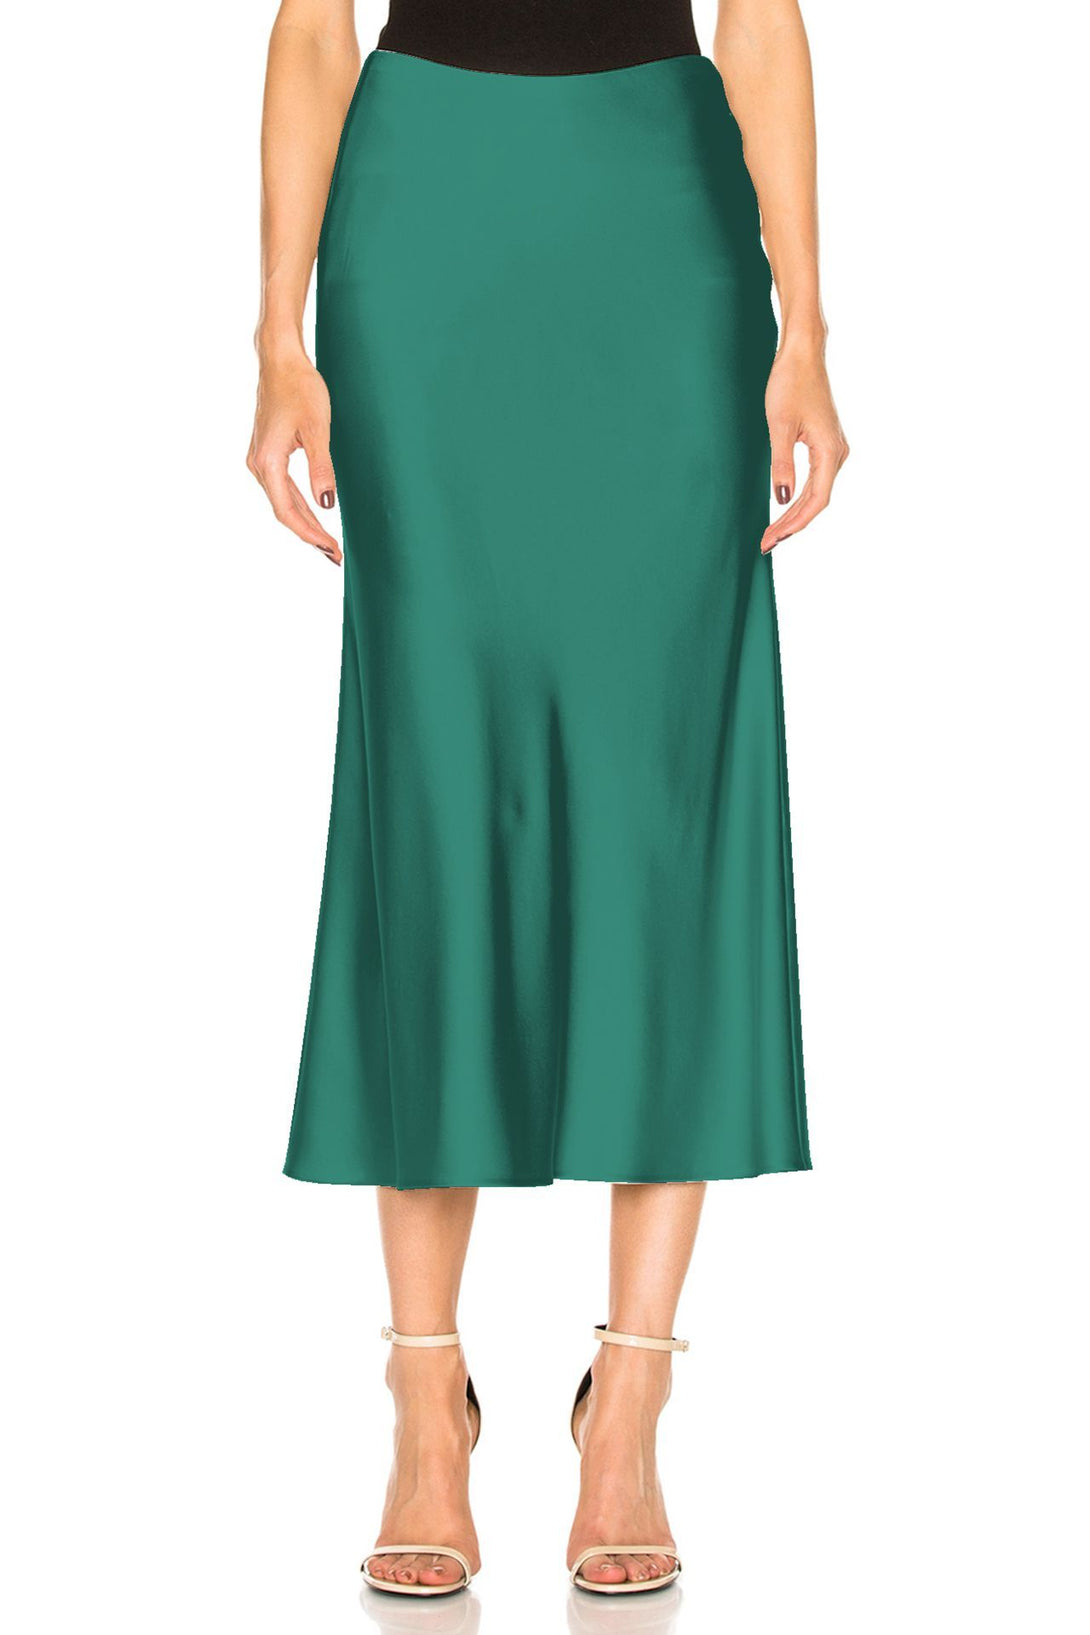 Women-Designer-Green-Skirt-By-Kyle-Richard